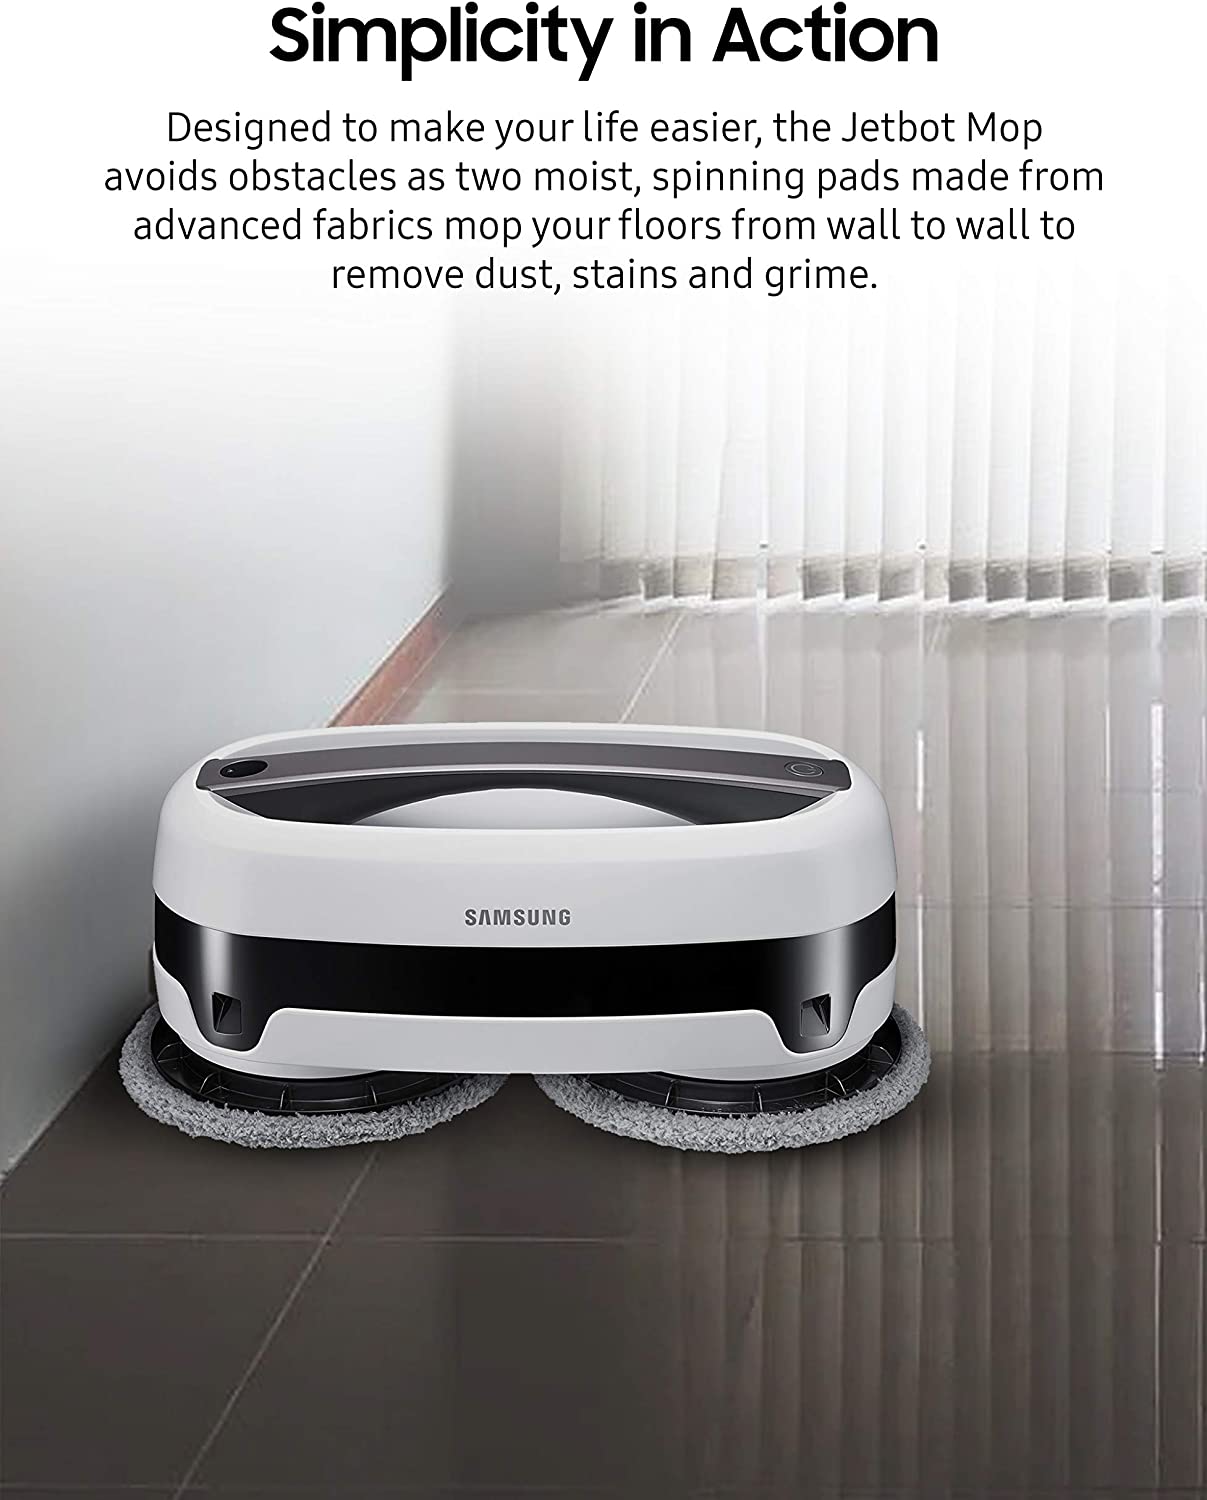 Robot que limpia con almohadillas de microfibra de doble giro, sensor inteligente para trapeado húmedo, perfecto para azulejos, vinilo, laminado y madera VR20T6001MW Samsung